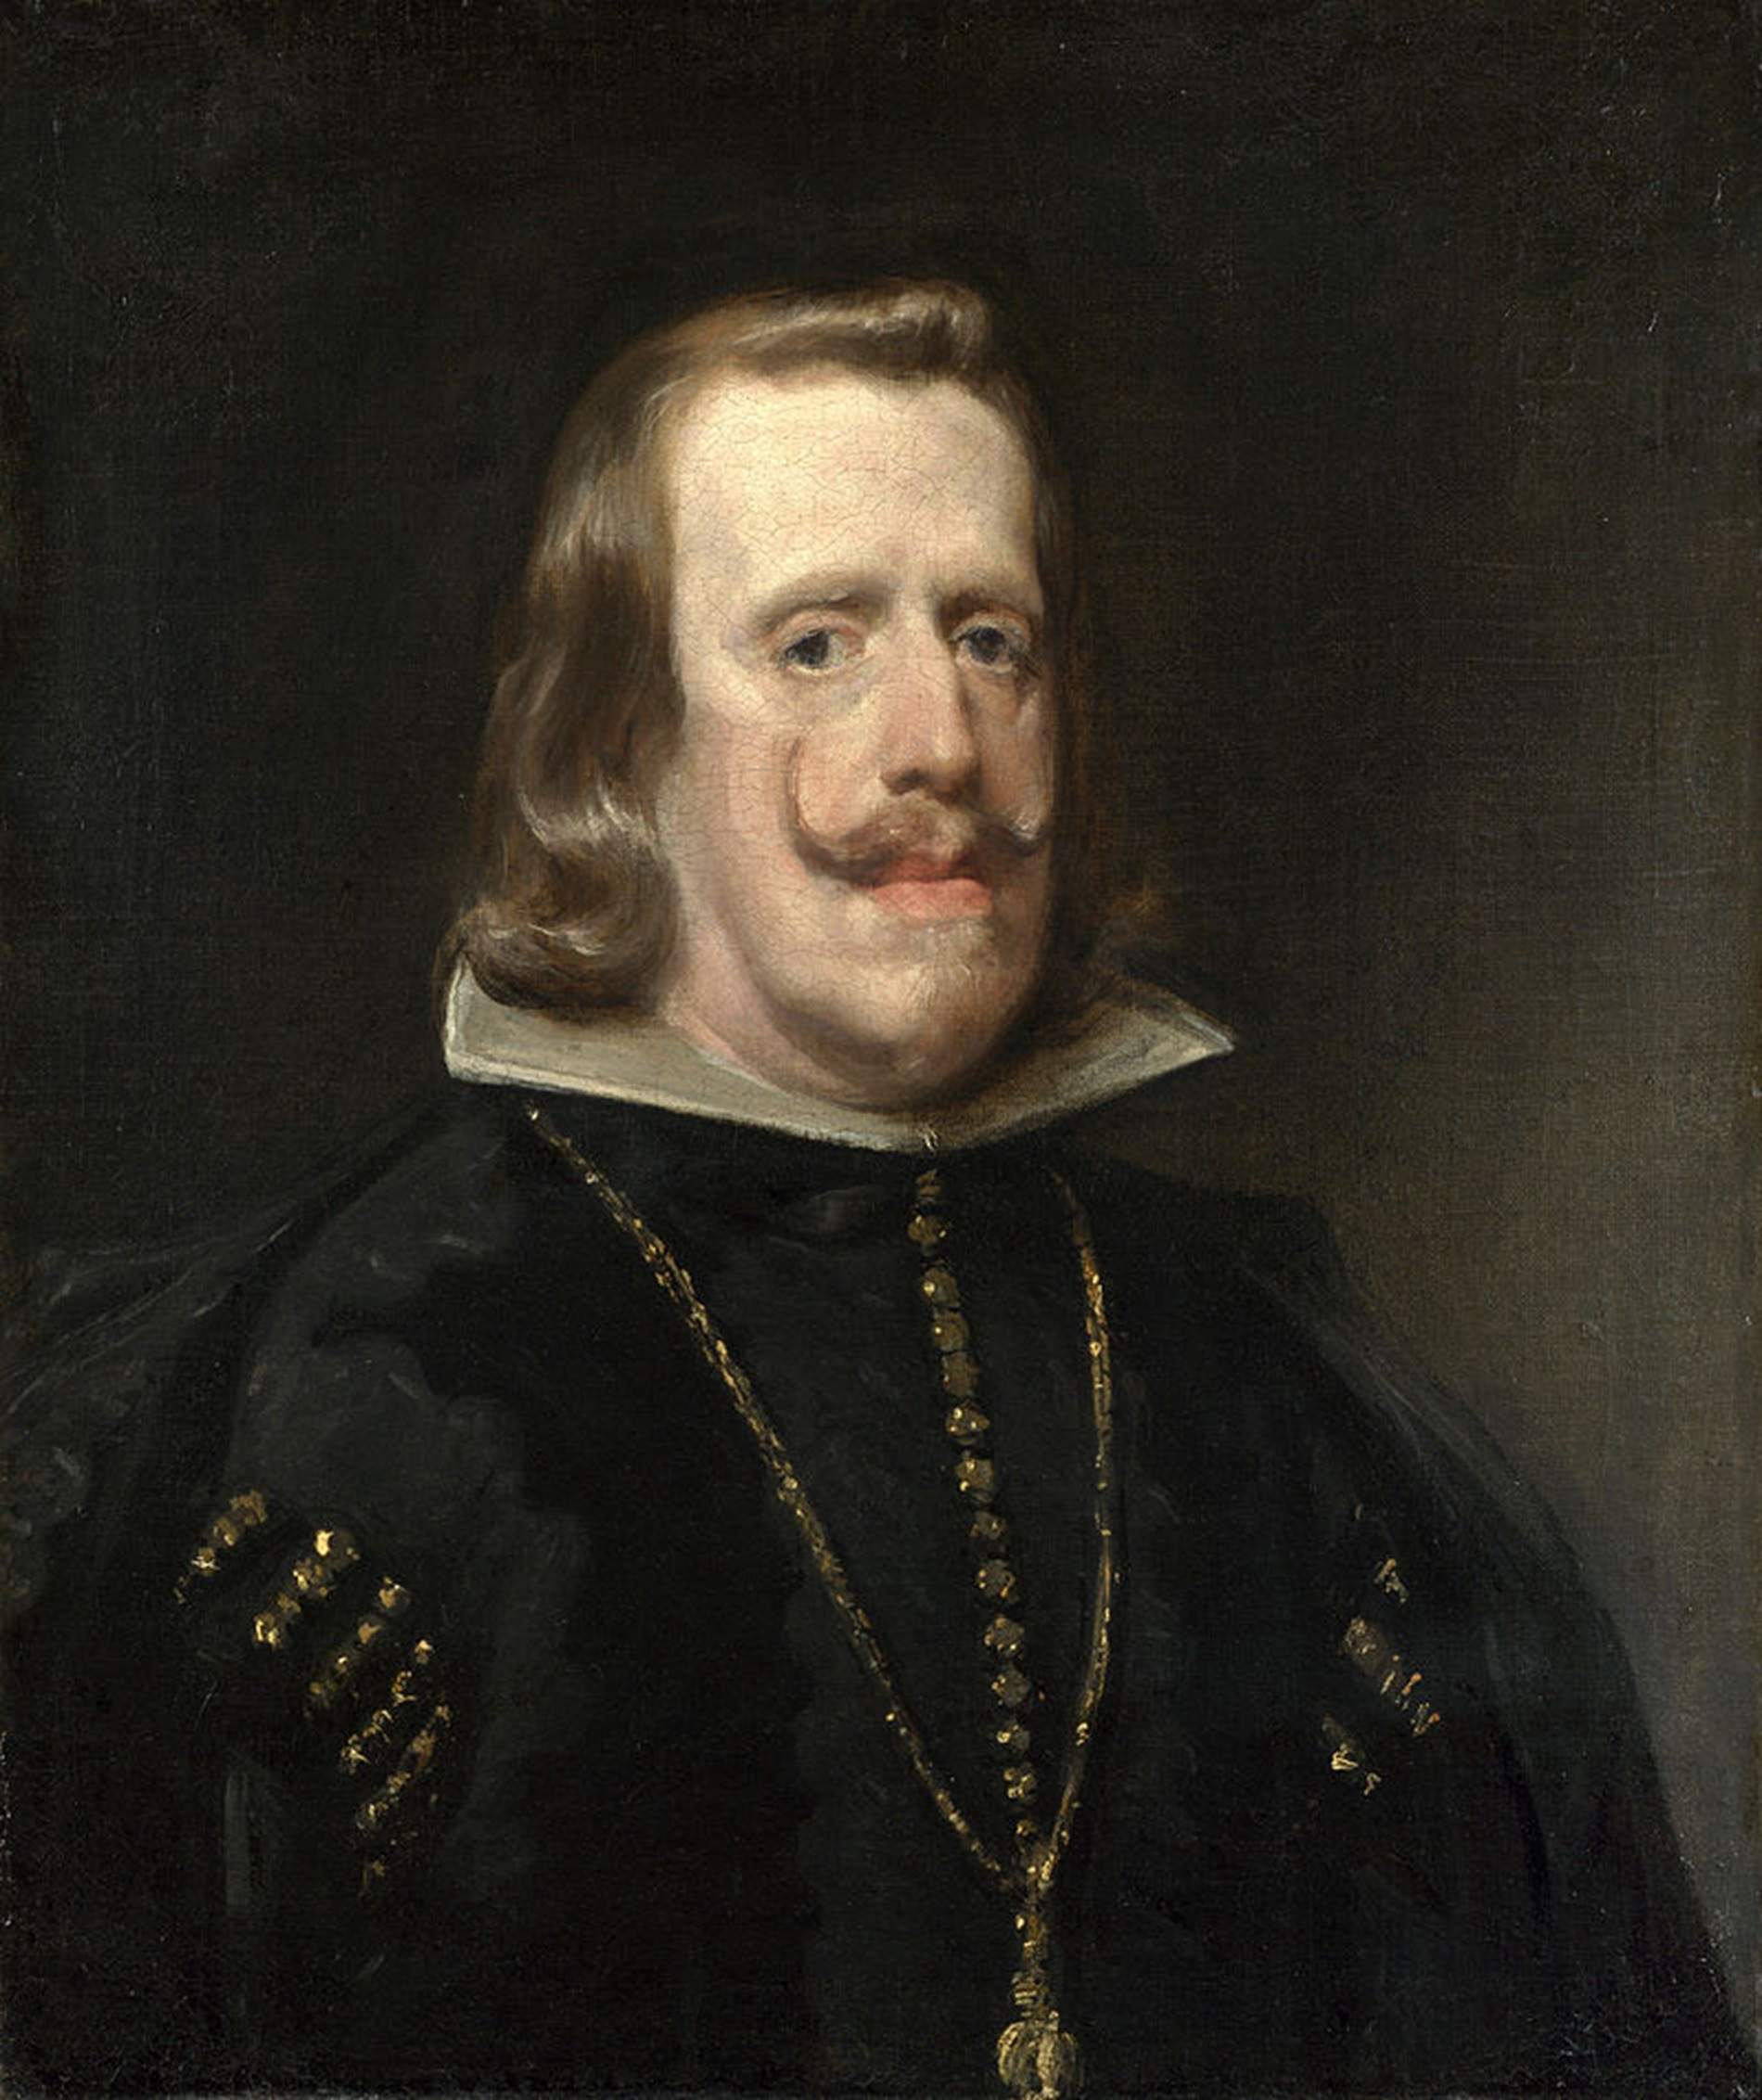 Nace Felipe IV, el rey que marca el inicio del declive de la monarquía hispánica